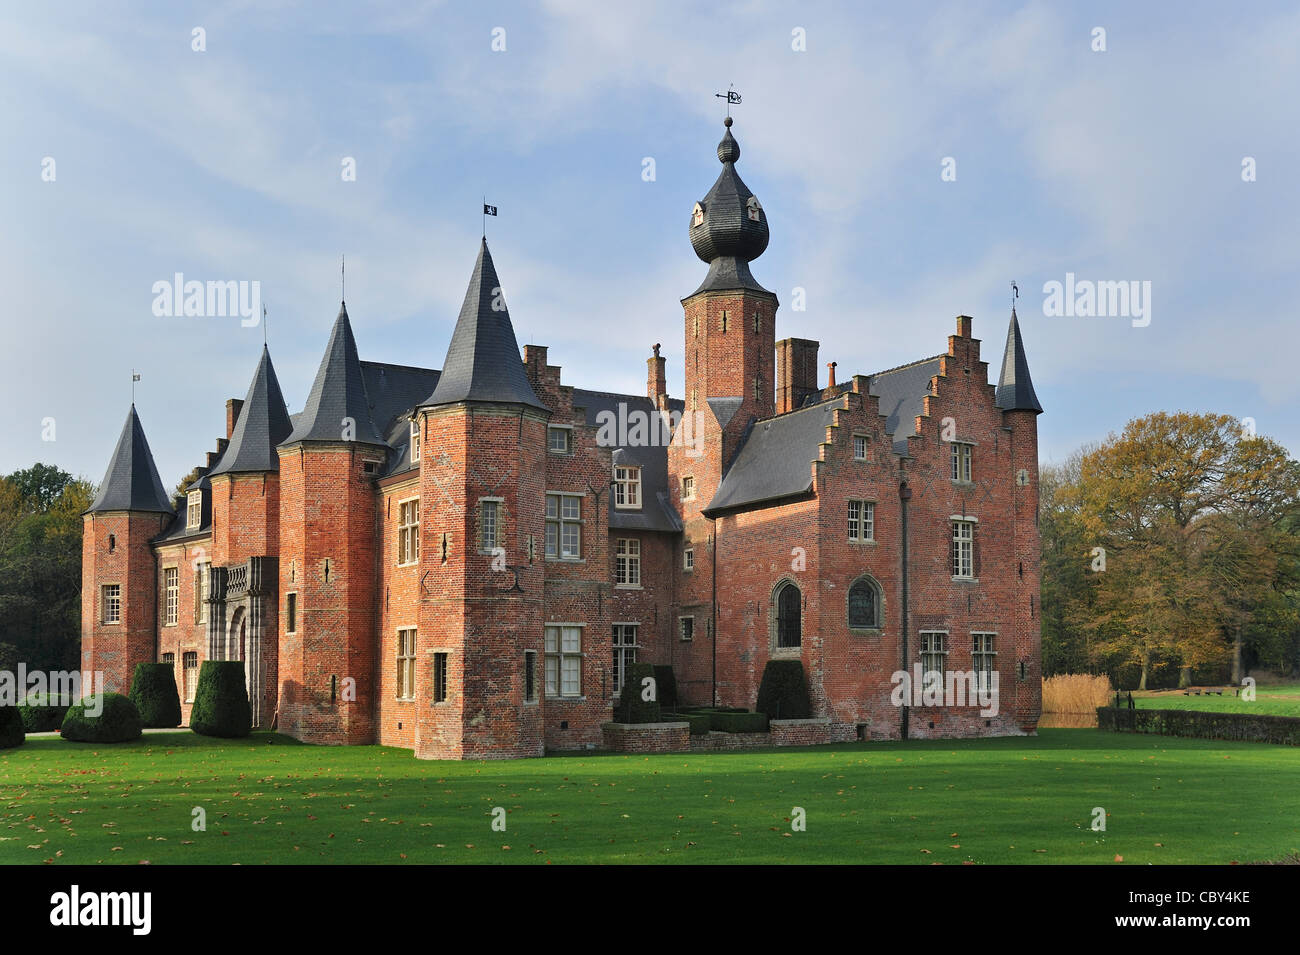 Le Château de Rumbeke, l'un des plus anciens châteaux Renaissance en Belgique Banque D'Images